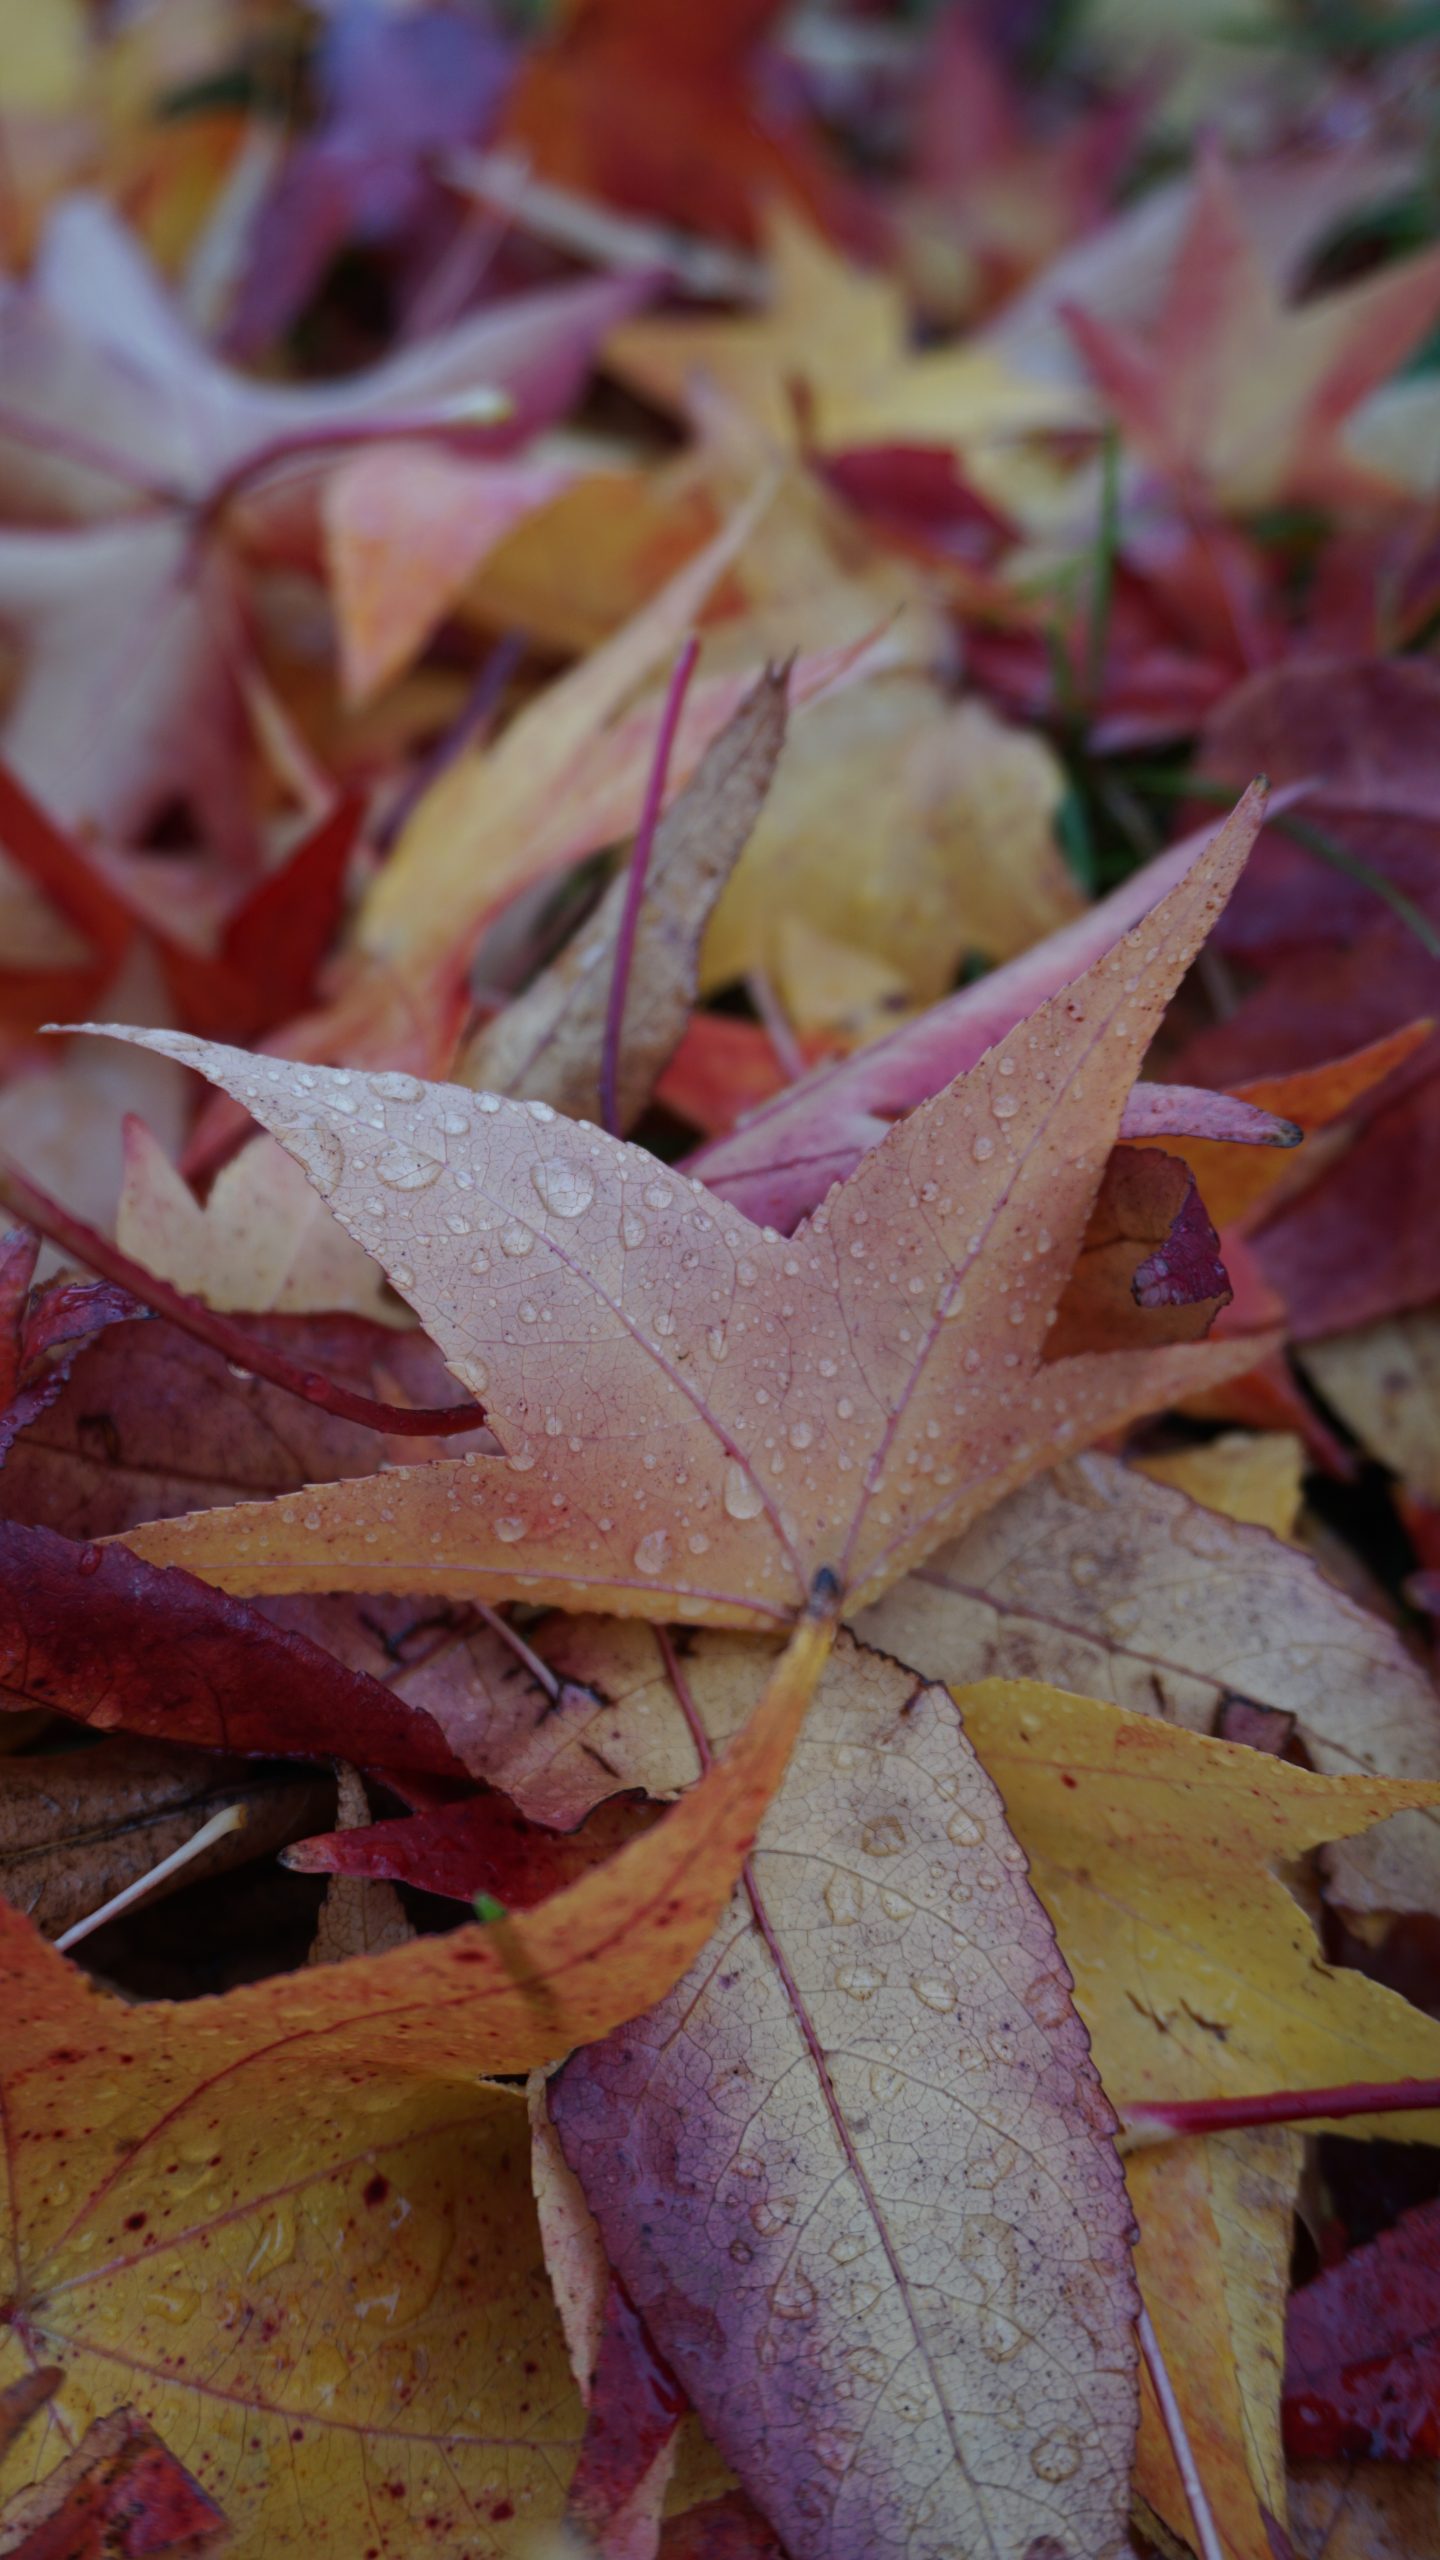 Le foglie: diverse stagioni, diversi colori